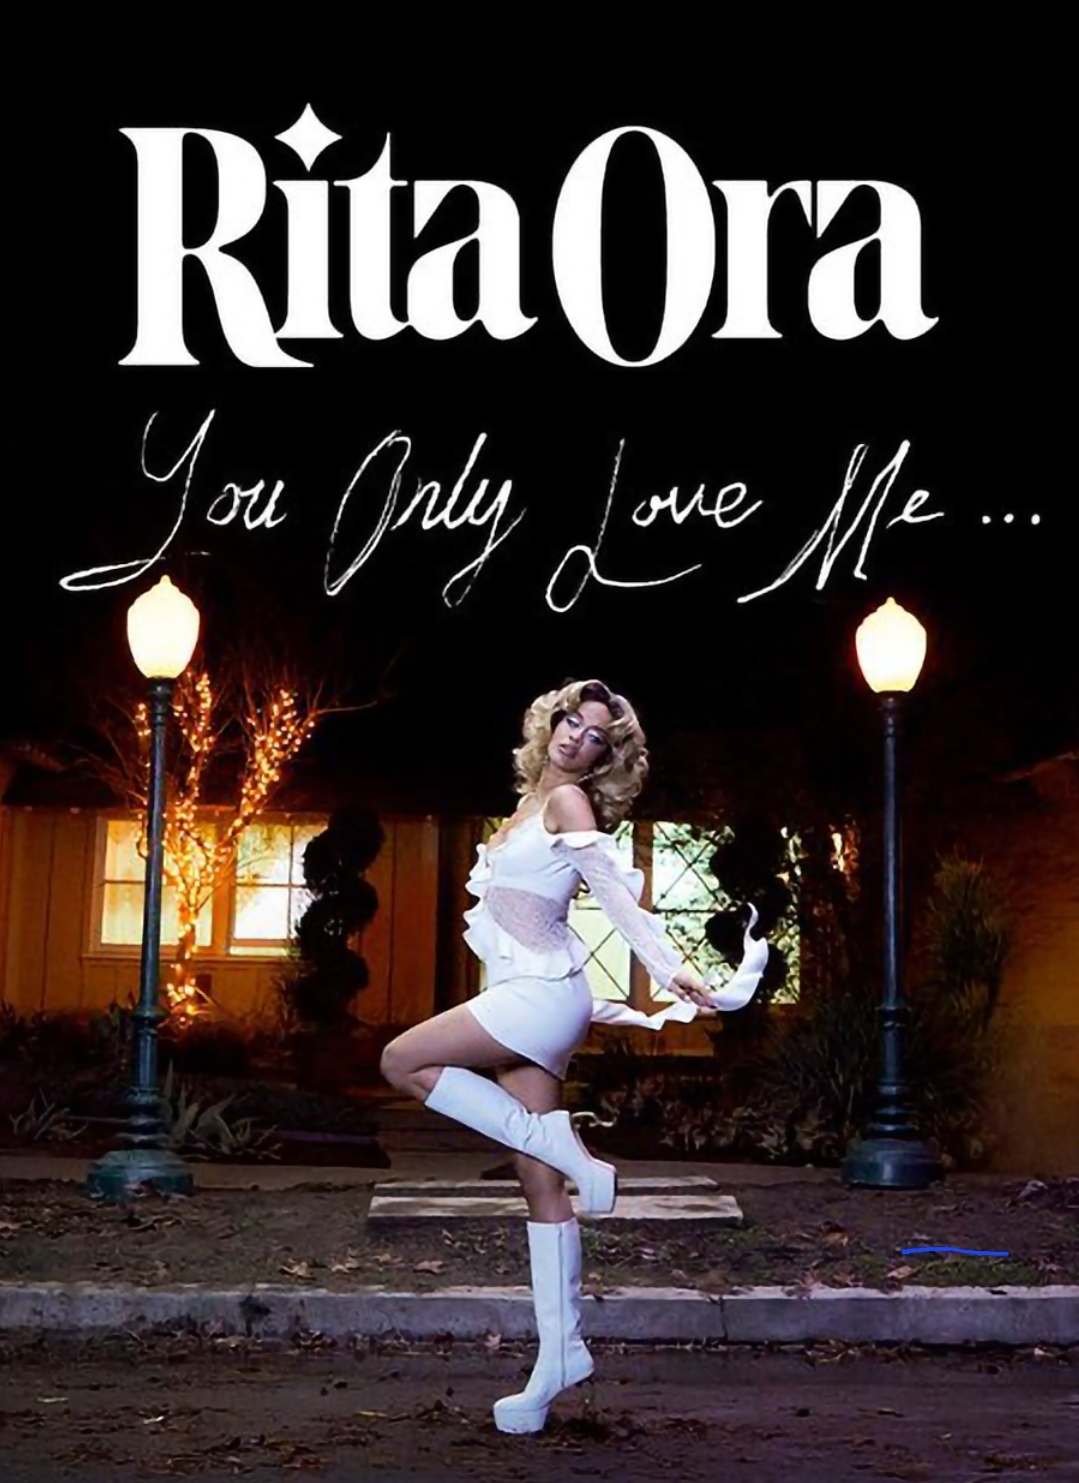 Rita Ora: You Only Love Me